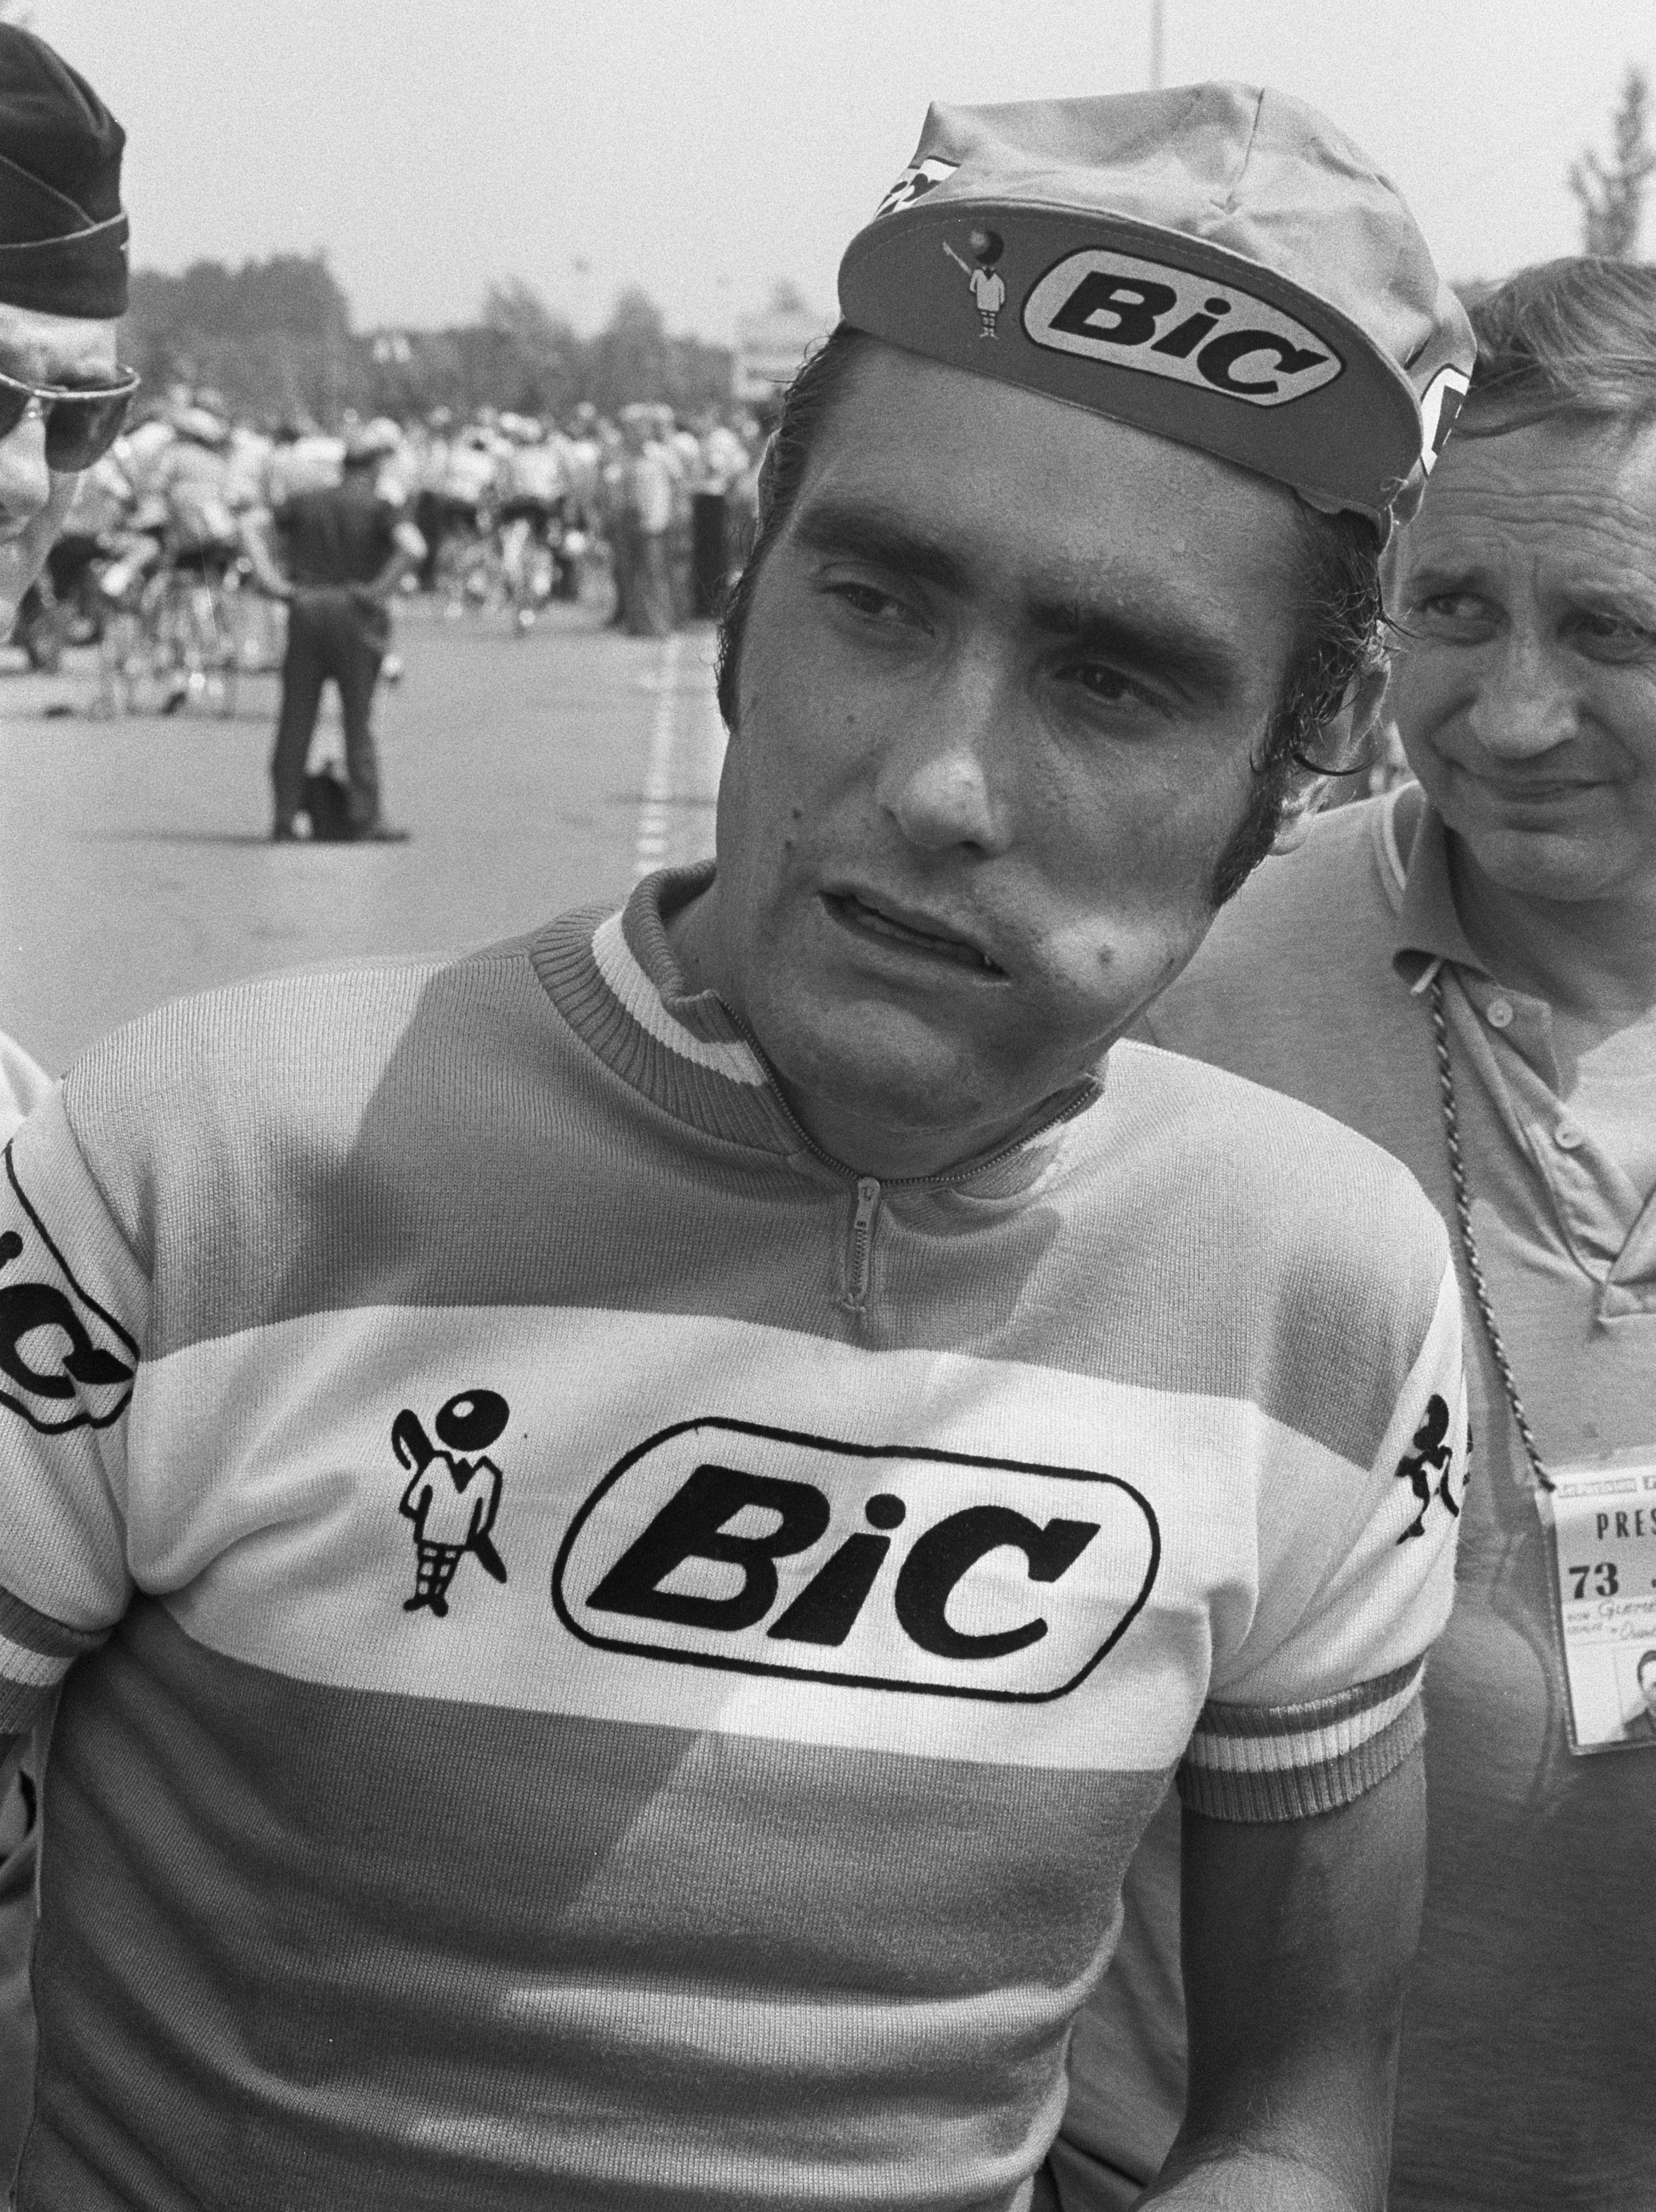 Luis Ocaña en Francia en 1973. | Foto: Bert Verhoeff / Anefo, Tour de France, Luis Ocaña, CC0 1.0